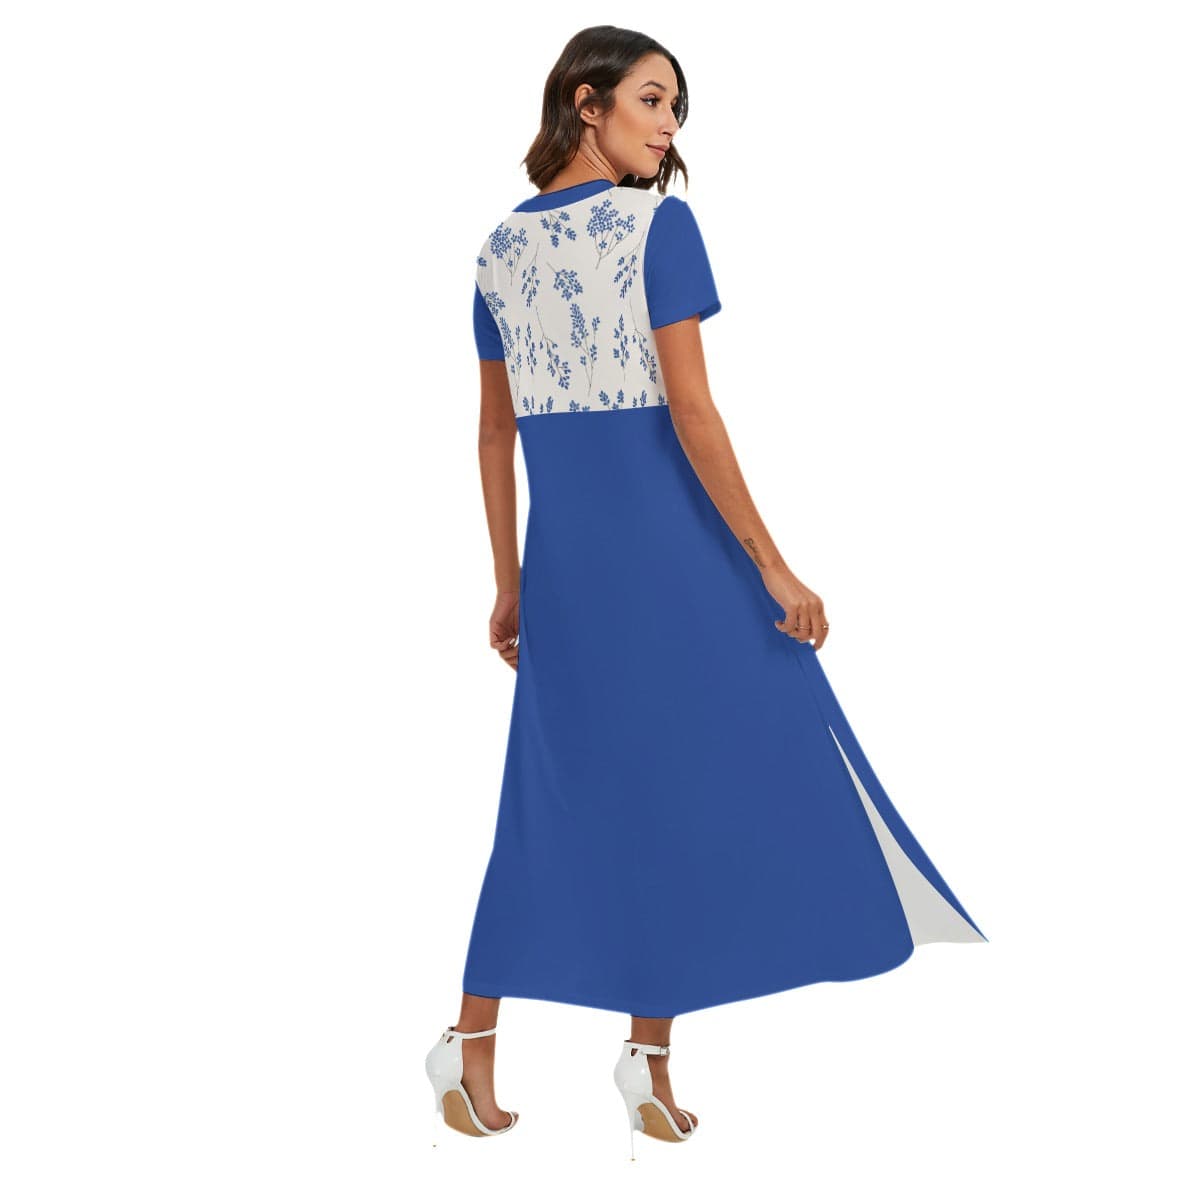 Yoycol Ecru Cobalt Floral Dress - Women's V-neck Dress With Side Slit